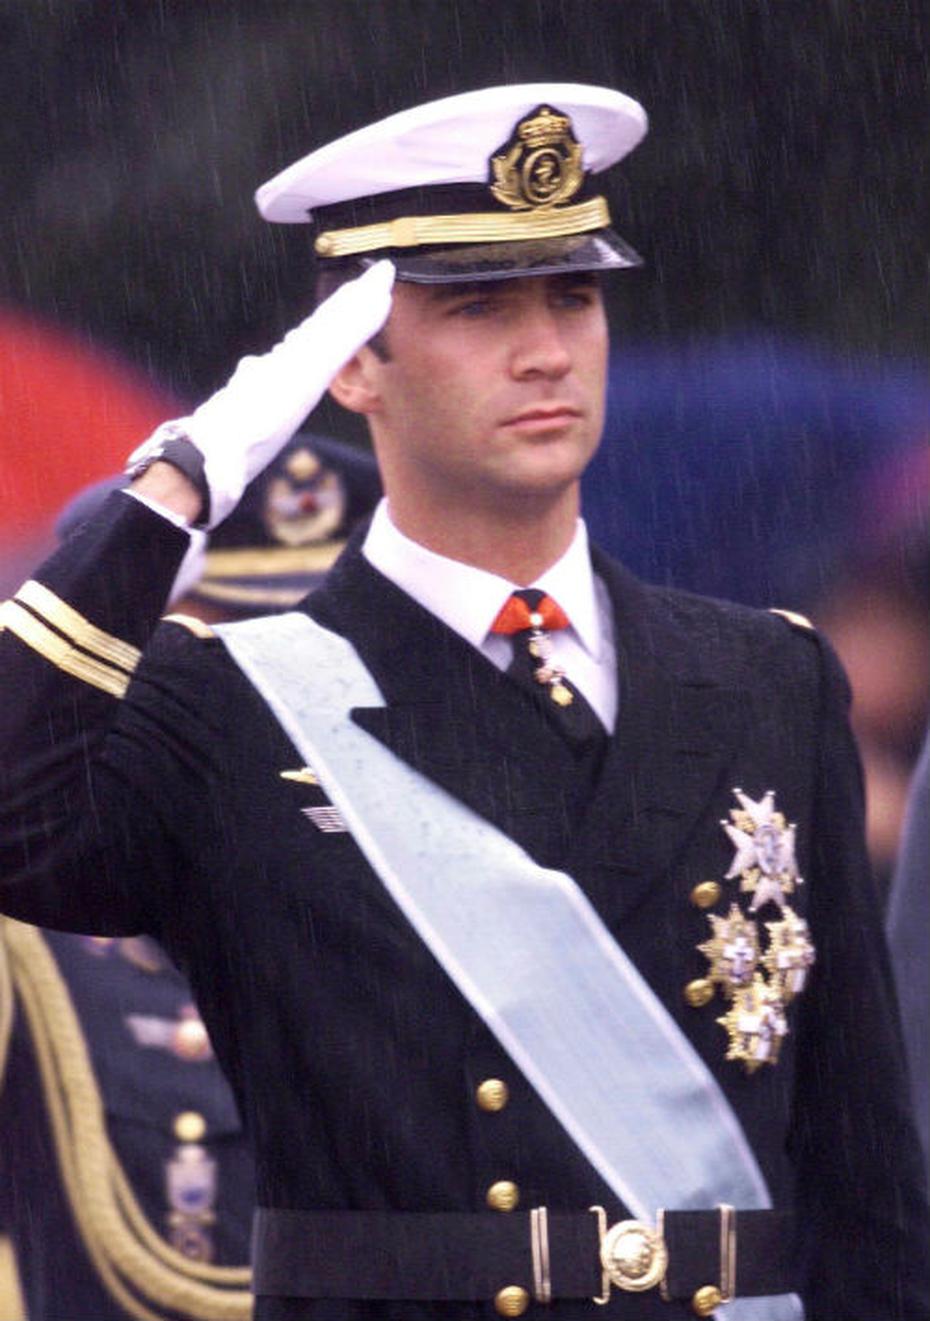 Vestimenta militar: Cuando todavía era príncipe, Felipe saluda durante el desfile militar sobre la plaza Colon de Madrid, el 12 de octubre de 1999, en ocasión de la fiesta nacional española. (Foto: Archivo)